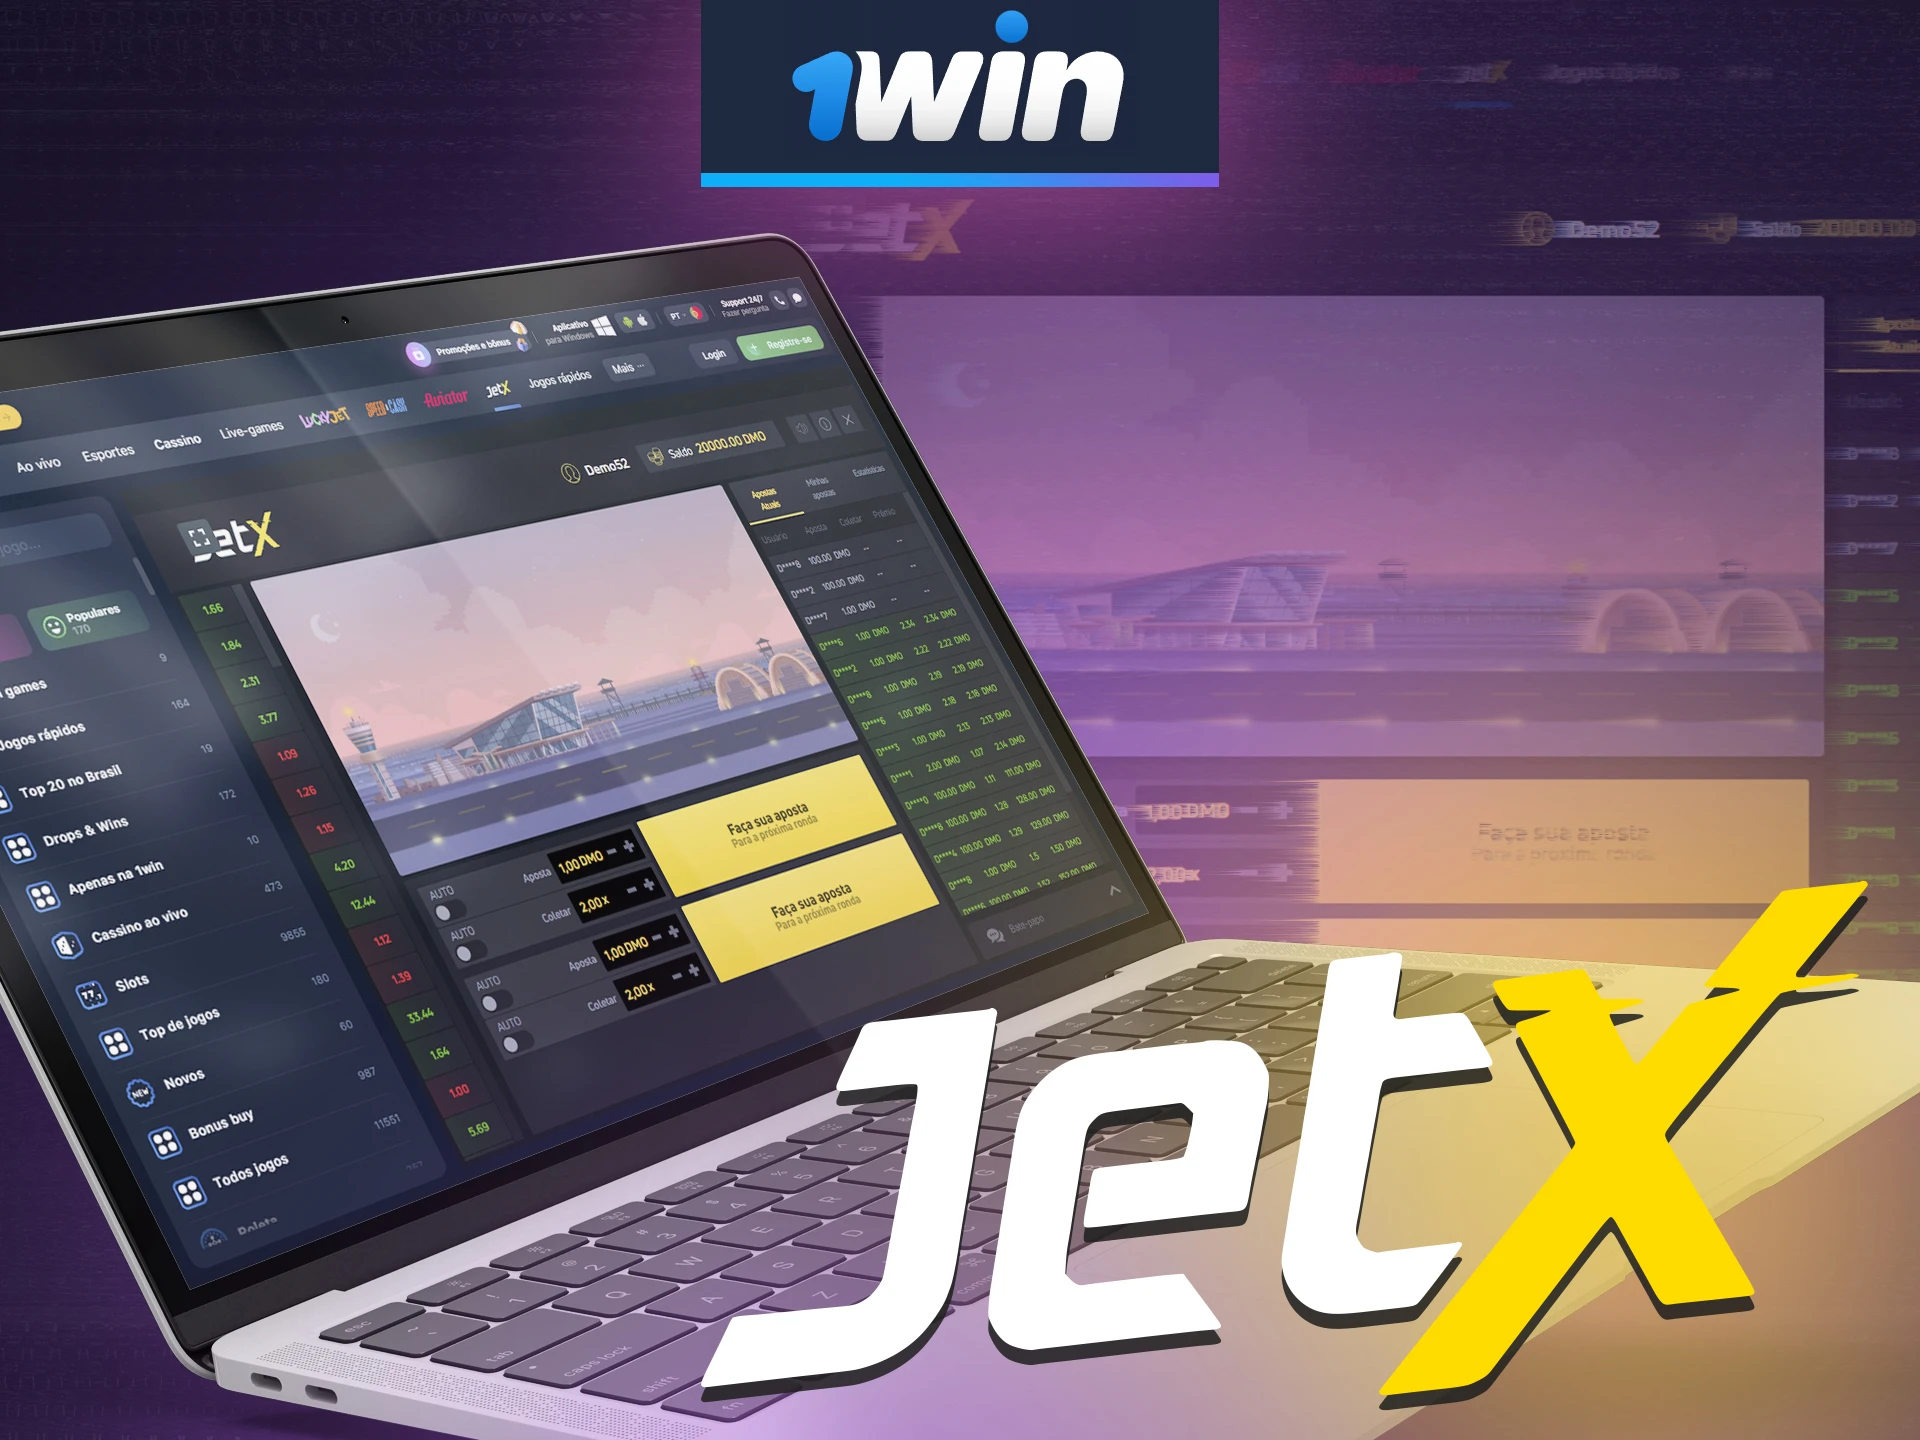 Faça a sua aposta vencedora a 1win no jogo do Jet X.